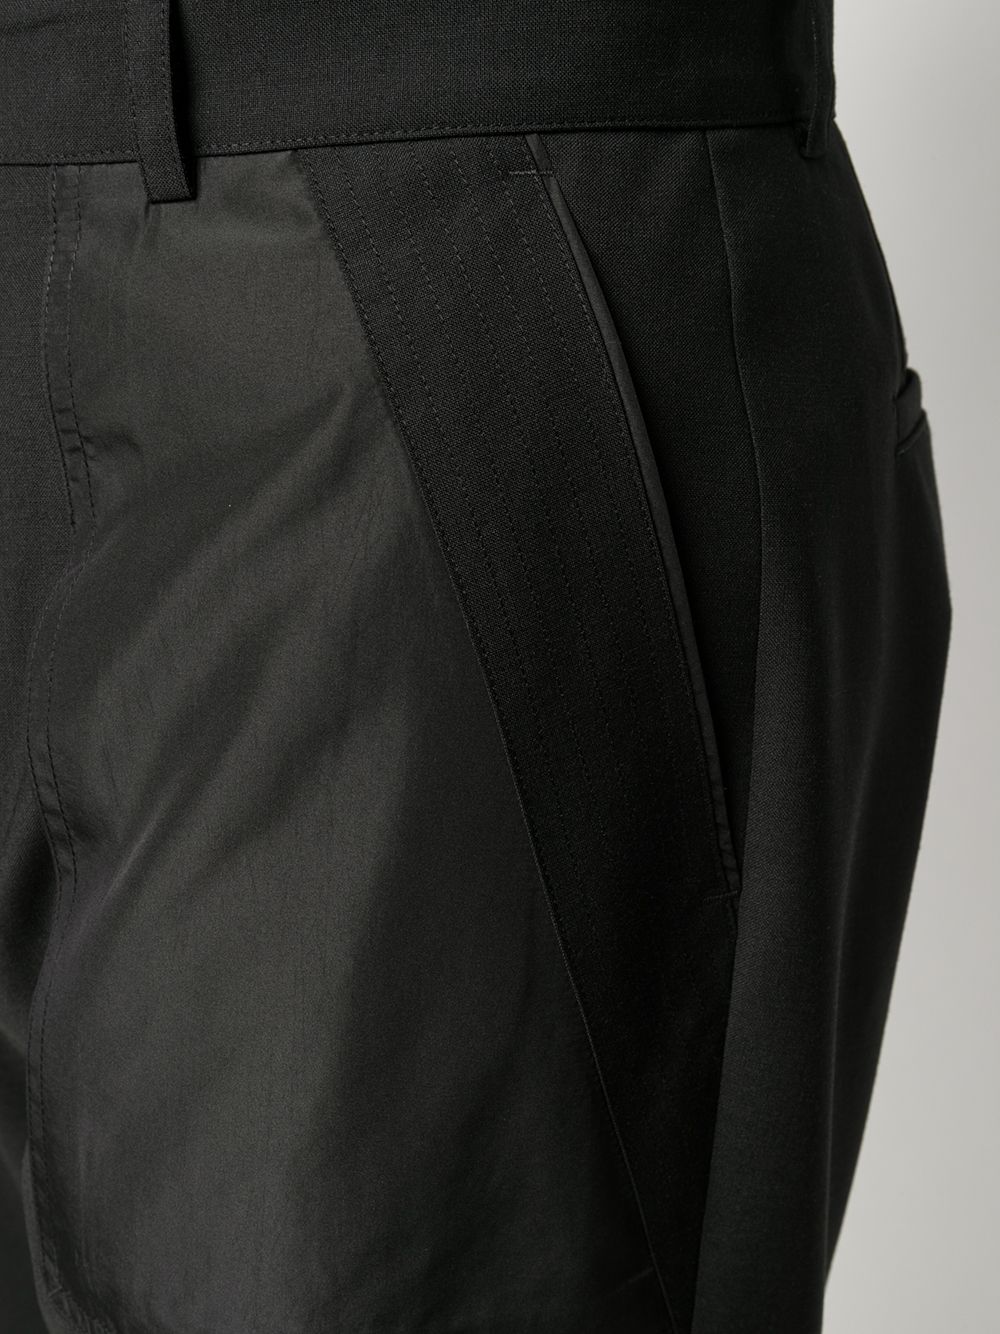 фото Les hommes строгие брюки с накладными карманами